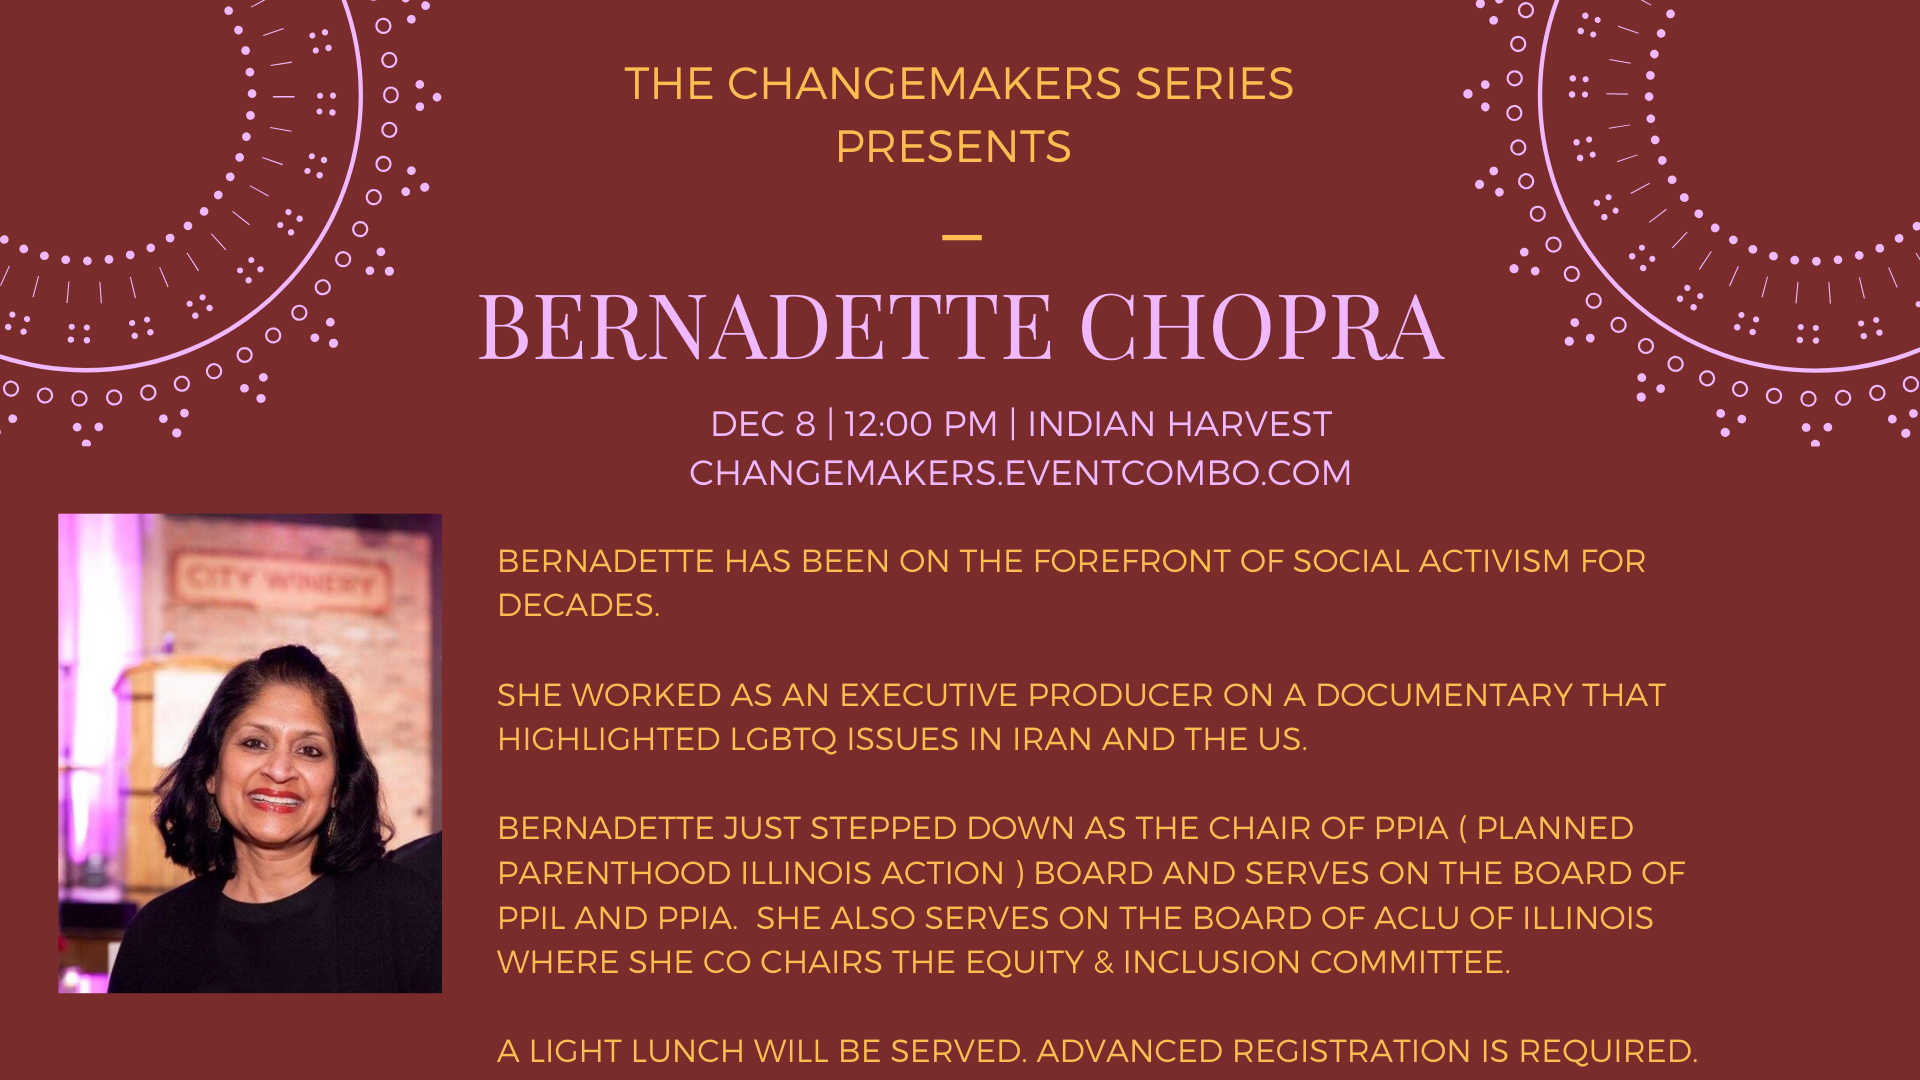 Changemaker Bernadette Chopra